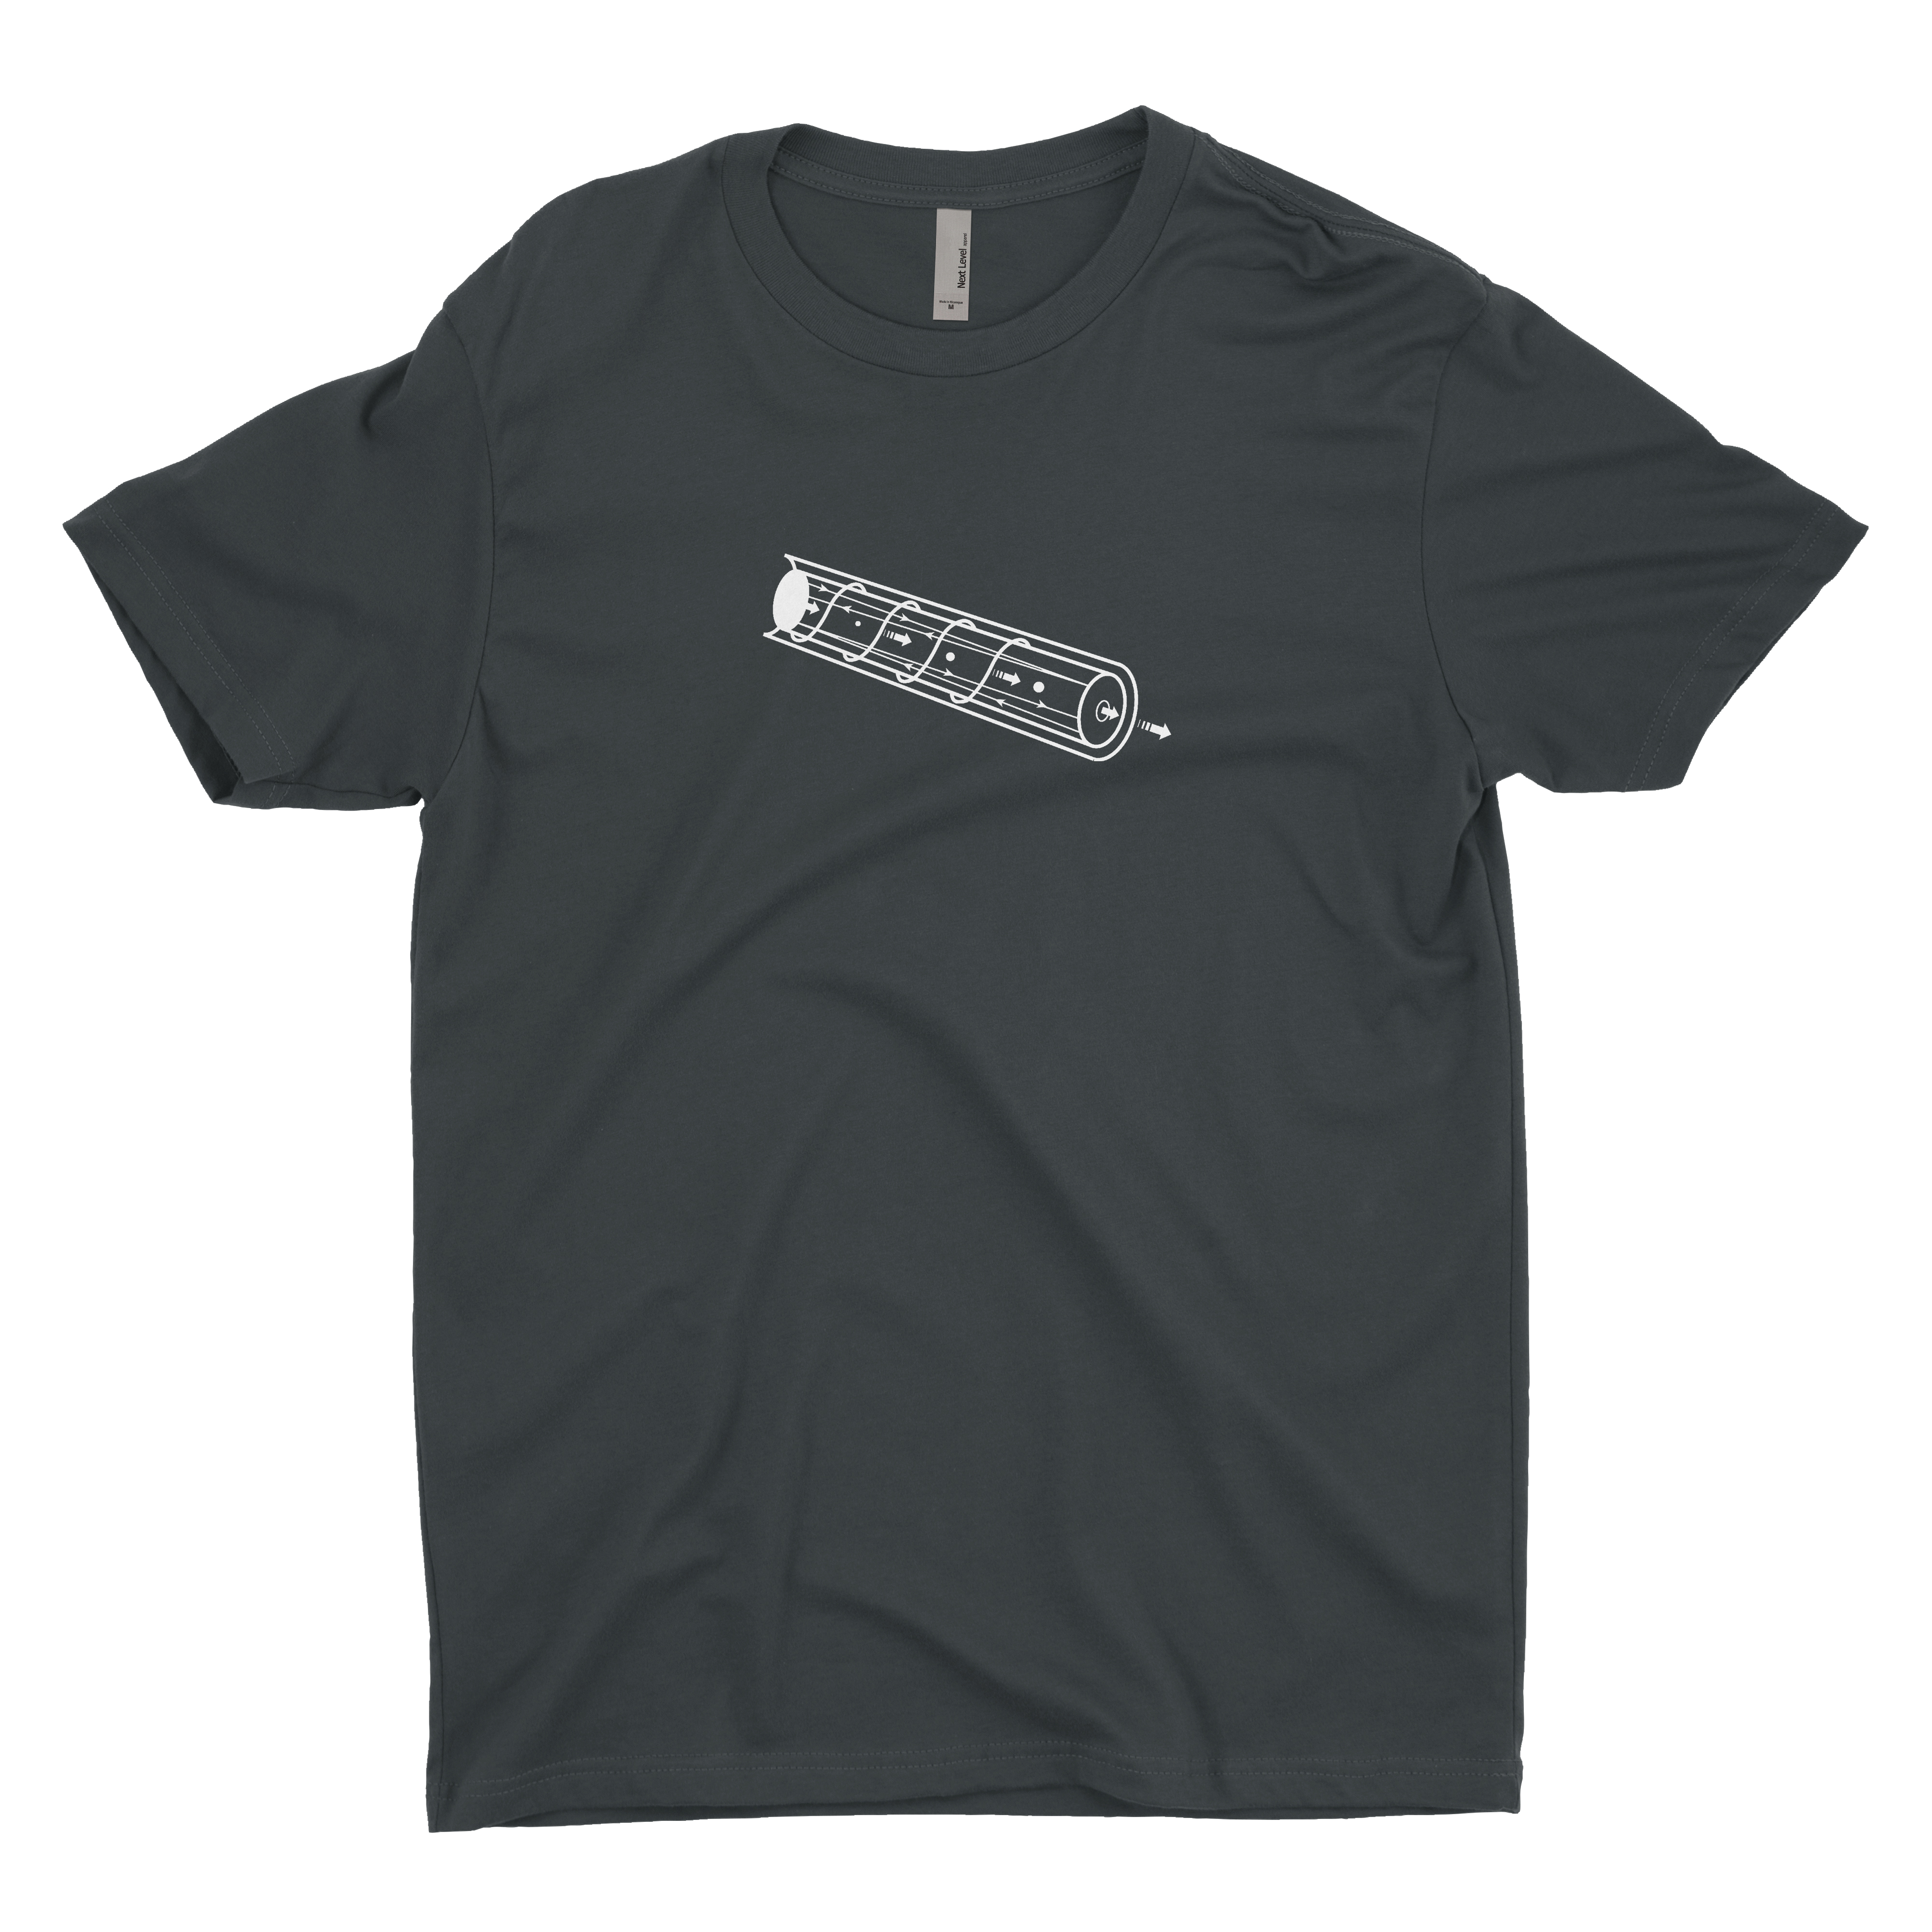 SPIE Merchandise - T-shirts - SPIE.org